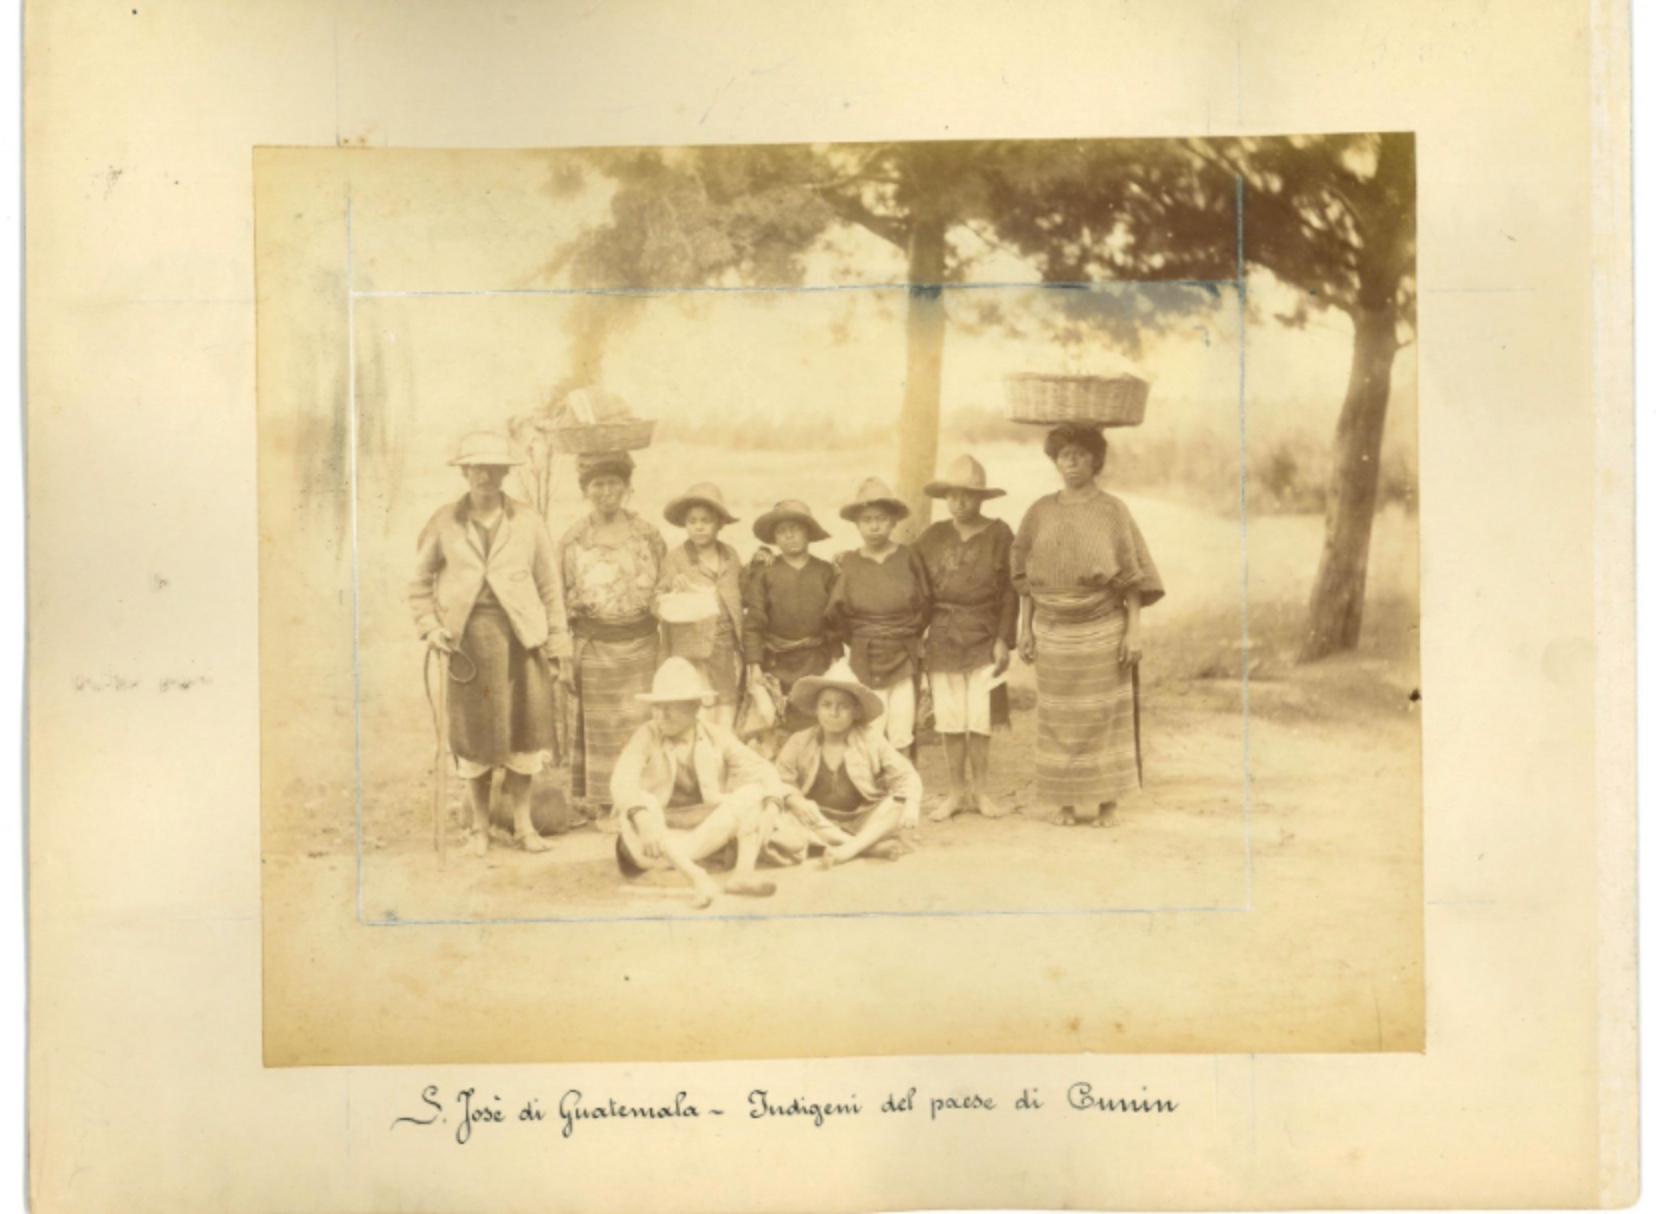 Unknown Landscape Photograph - Ancient Views of S. Josè, Guatemala - Vintage Photos 1880s